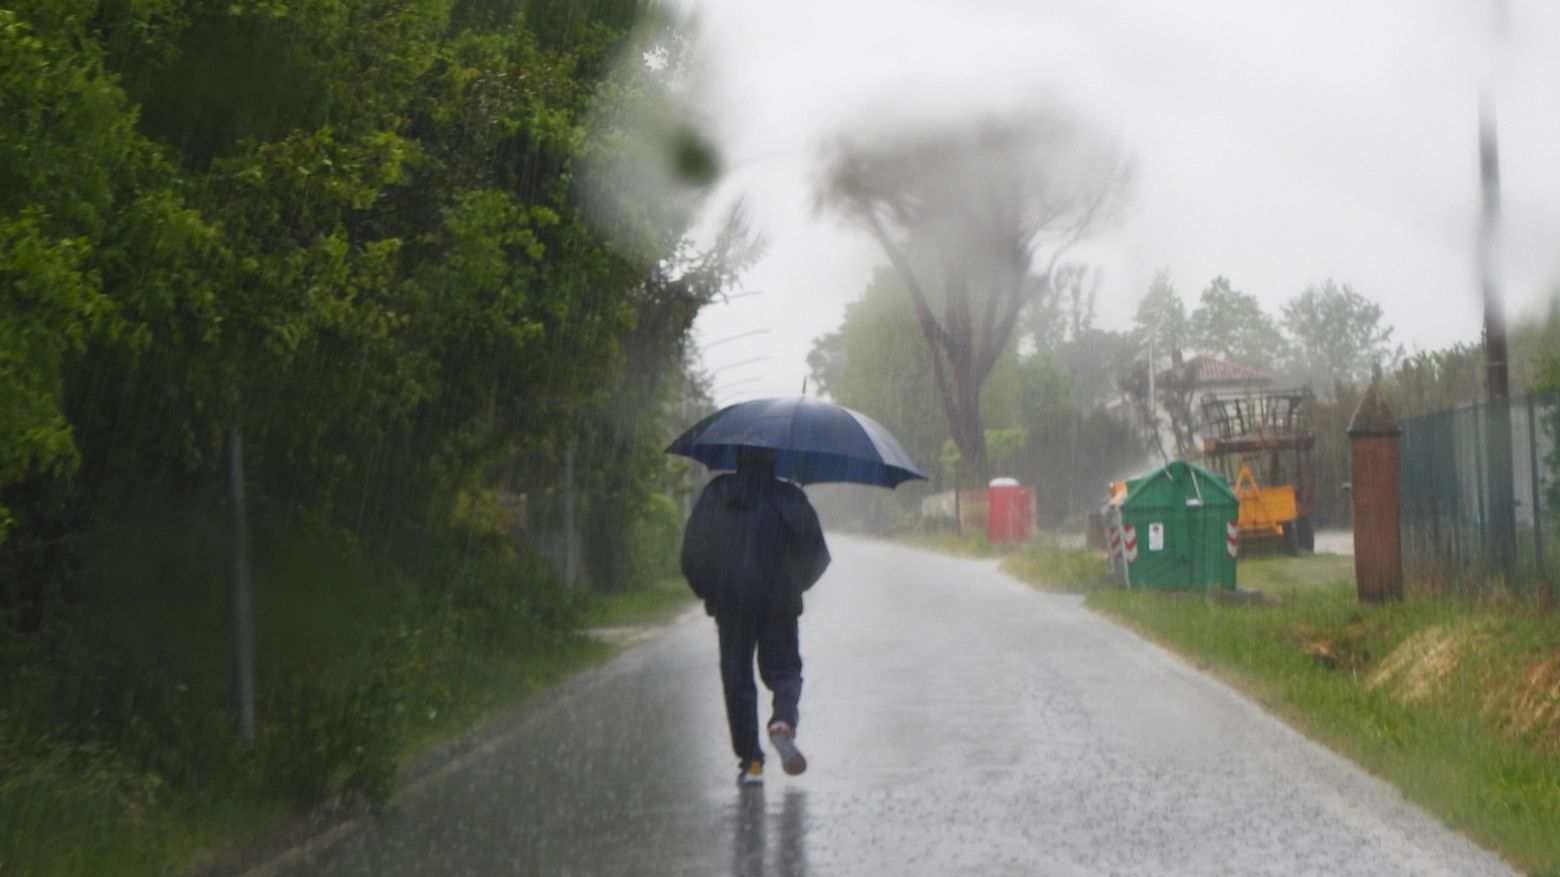 Rovesci di pioggia nel primo pomeriggio di oggi a Voltana di Lugo